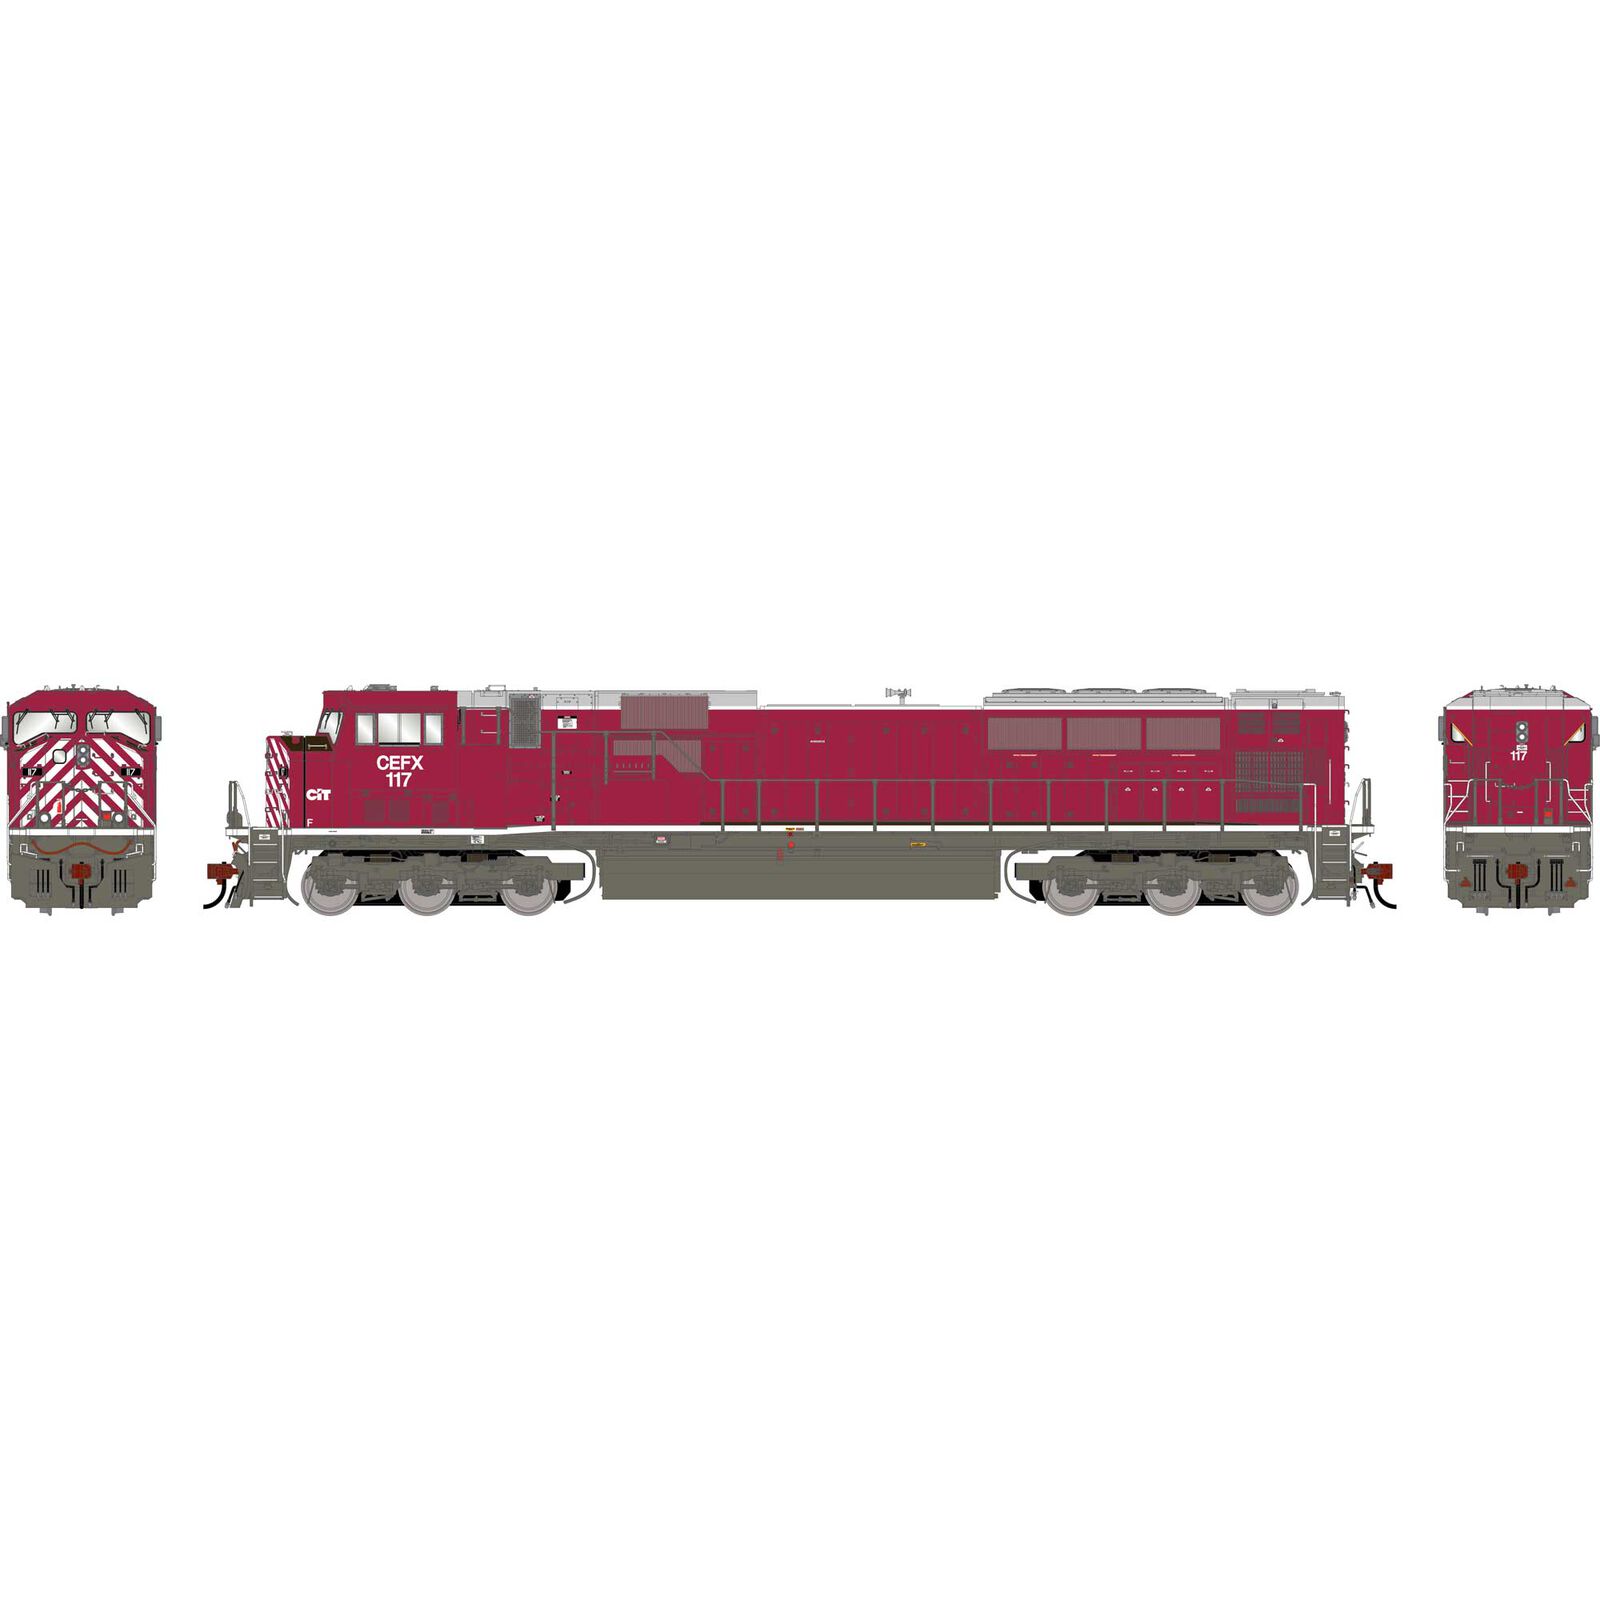 HO GEN SD90MAC Locomotive w/DCC & SOUND, CEFX #117